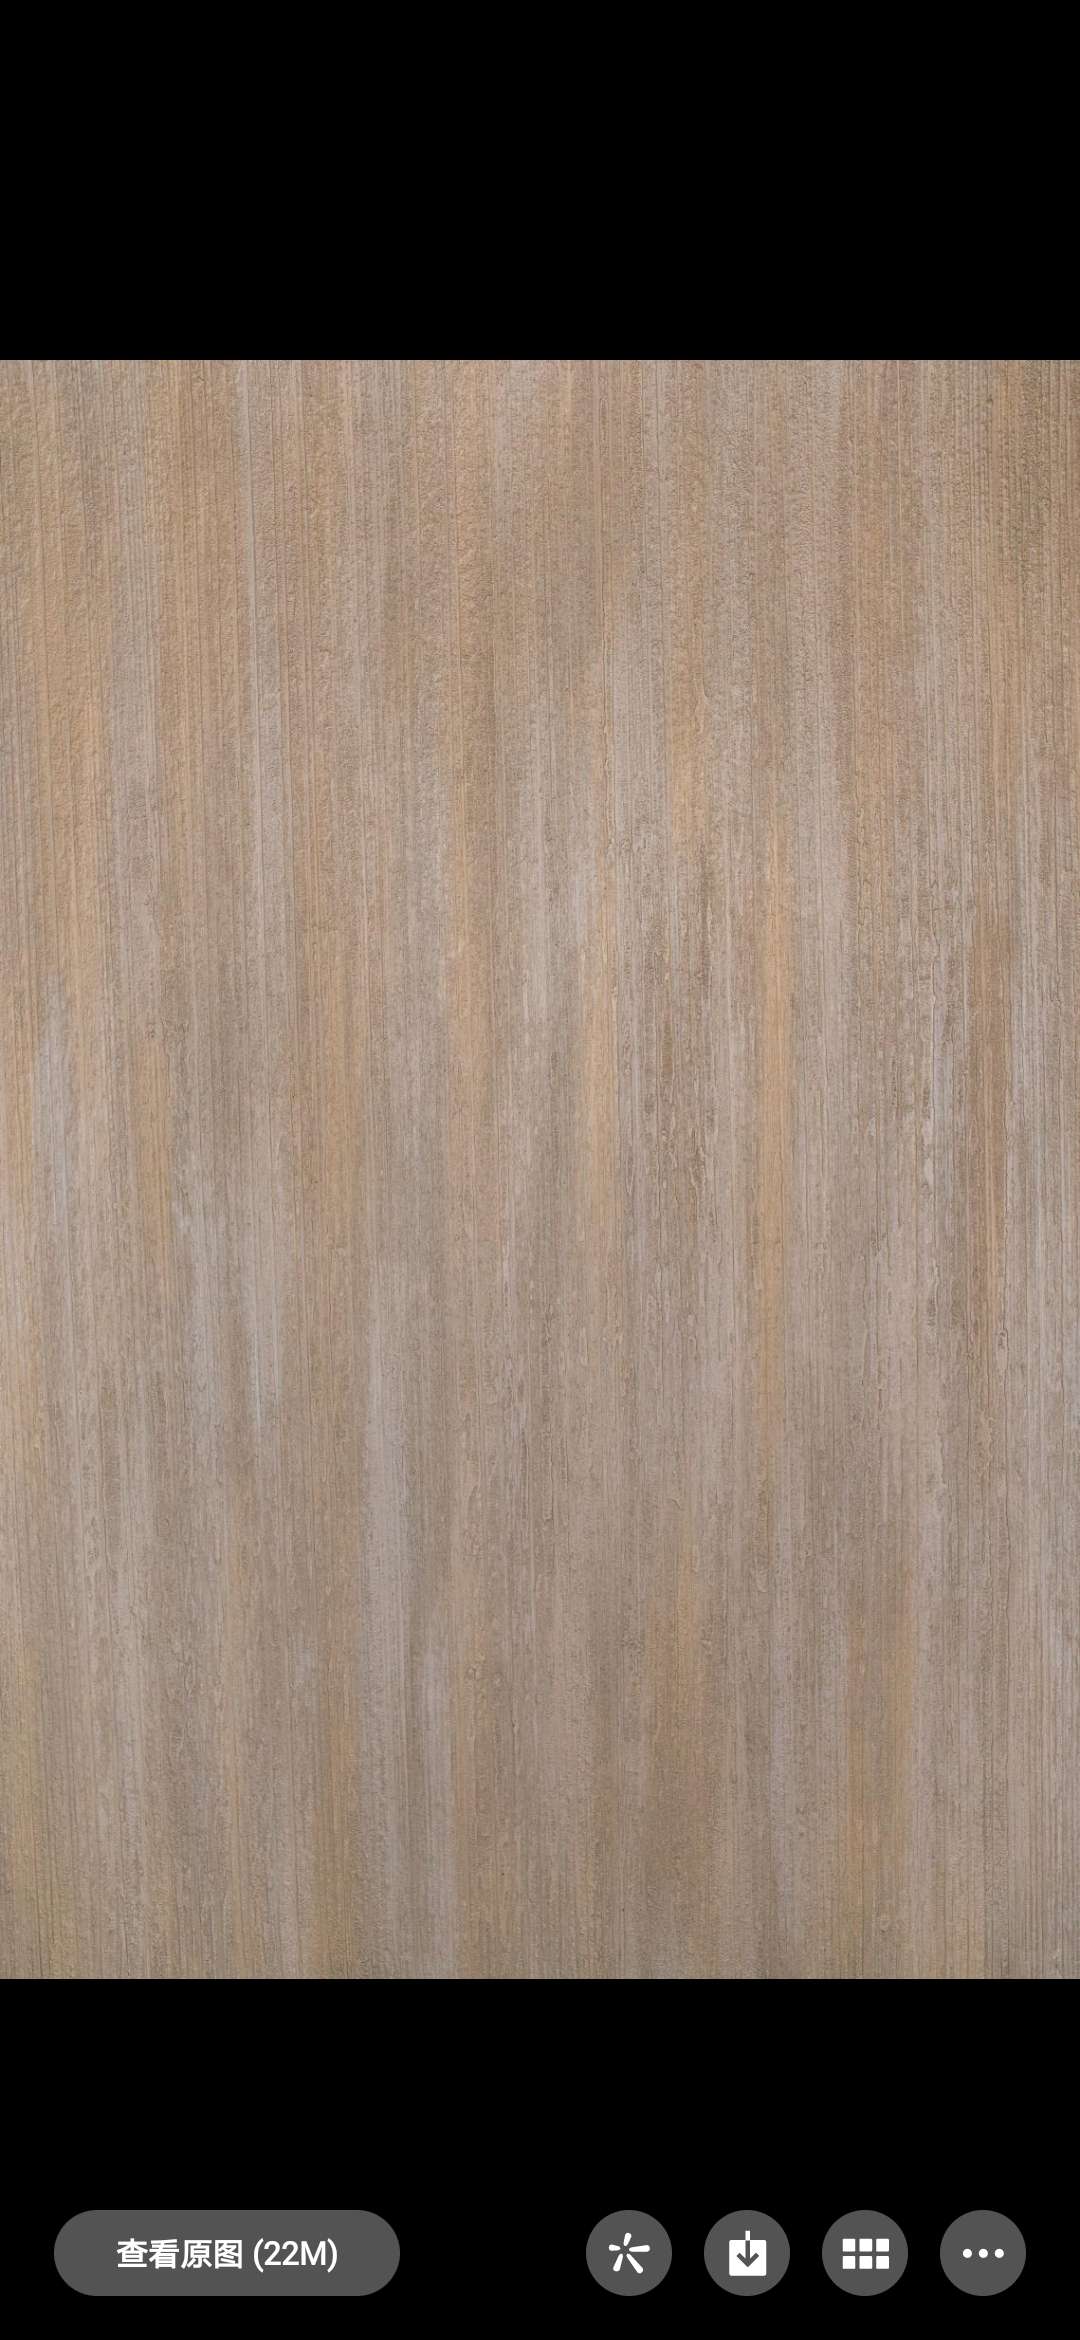 铂芙玛亚系列艺术壁材义乌市铂芙装饰材料商行图